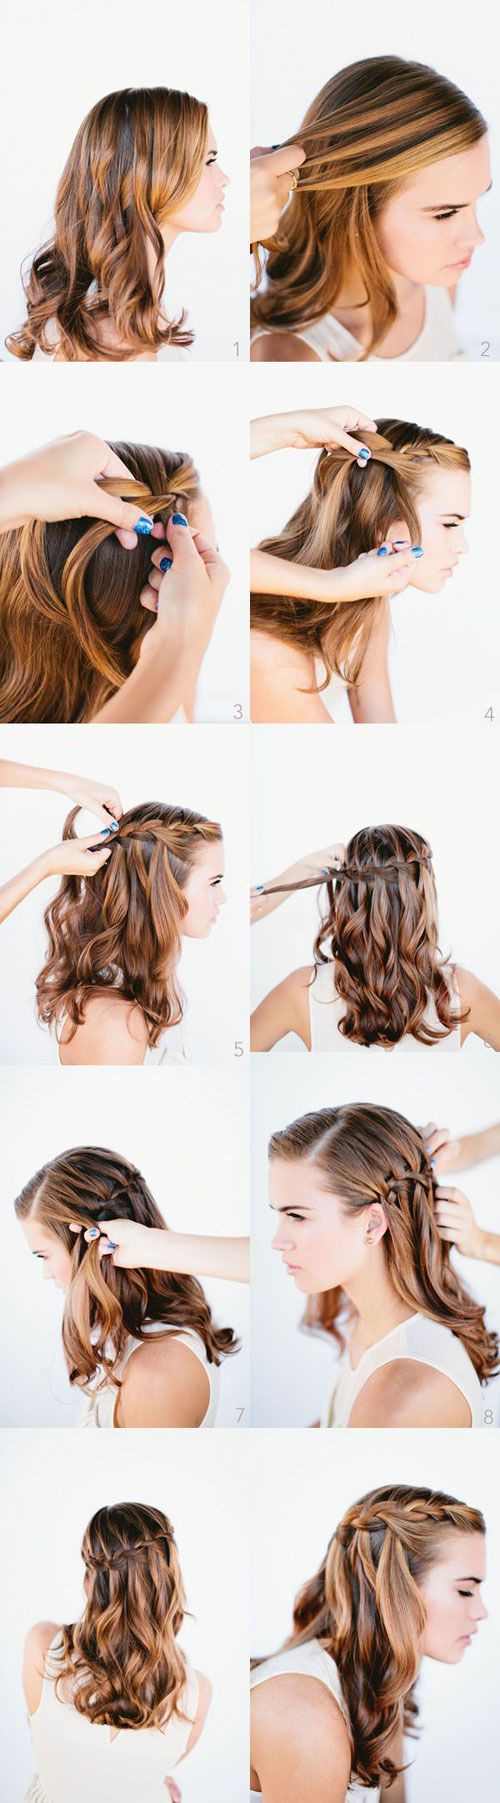 8 kiểu tóc dễ làm giúp bạn gái xinh đẹp đi chơi trung thu - 1